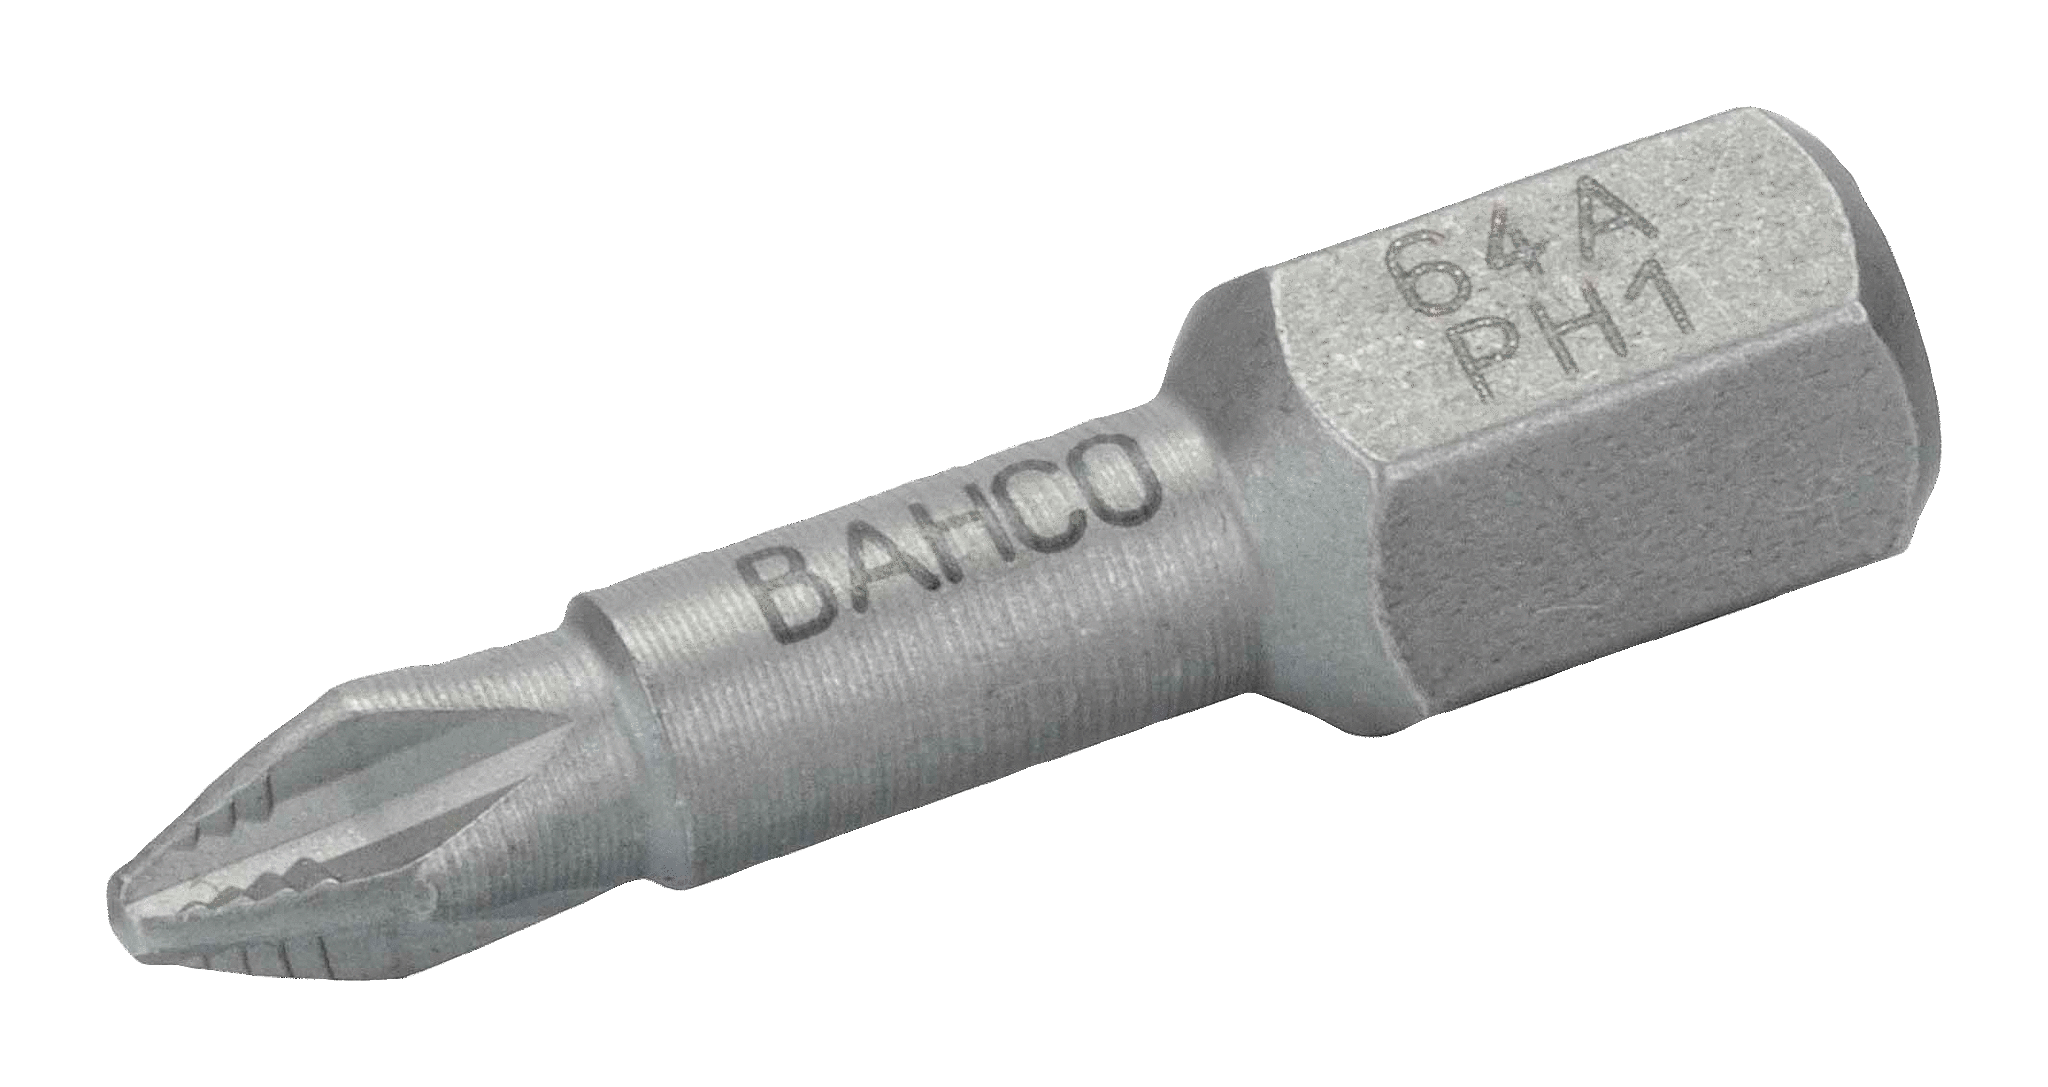 Торсионные биты ACR для отверток Phillips, 25 мм BAHCO 64A/PH2